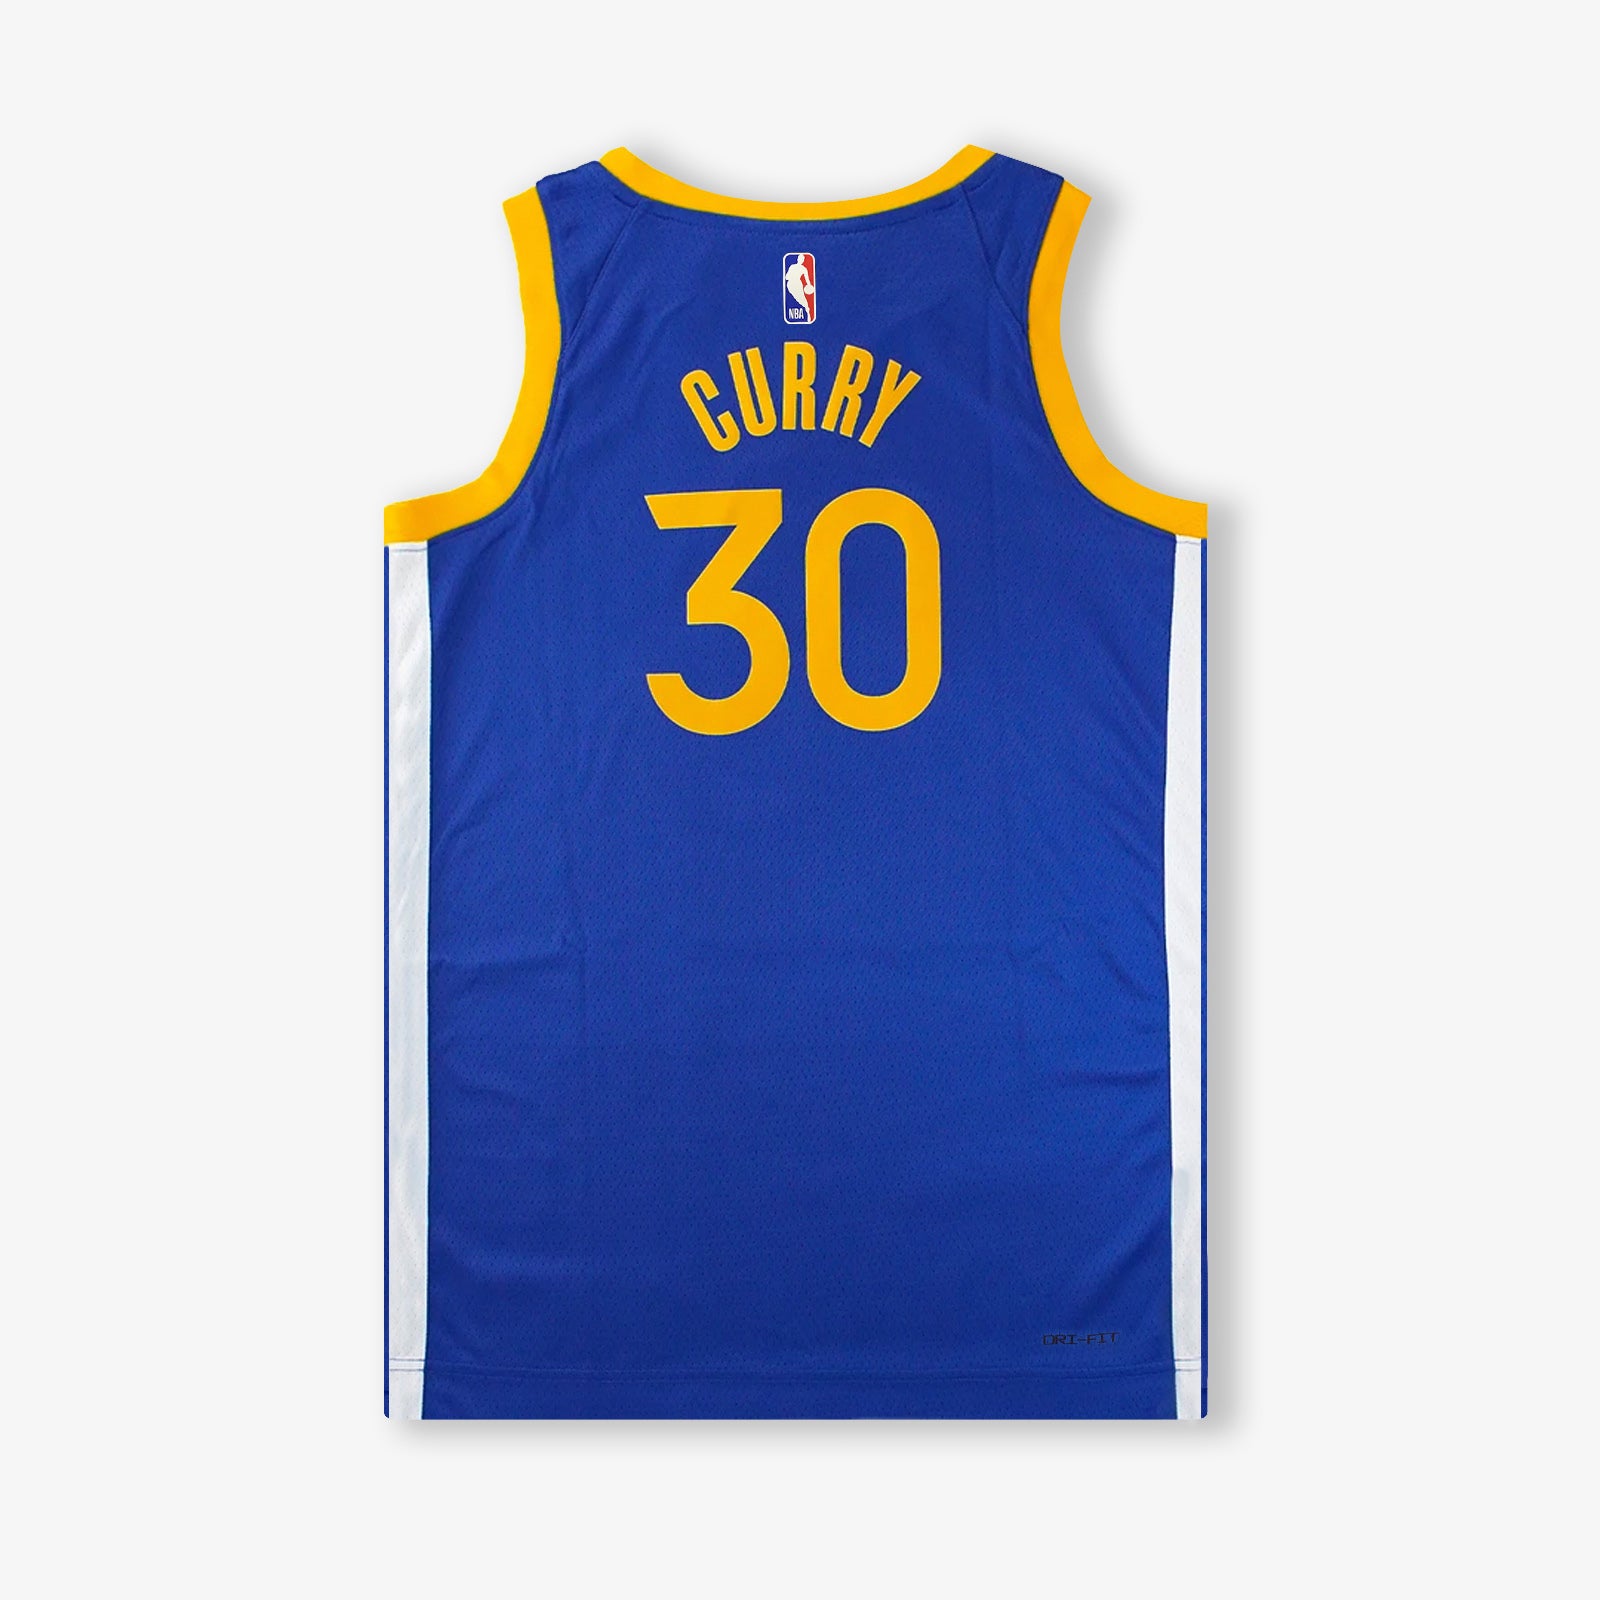 Golden State Warriors Stephen Curry Finals MVP Nike Shirt